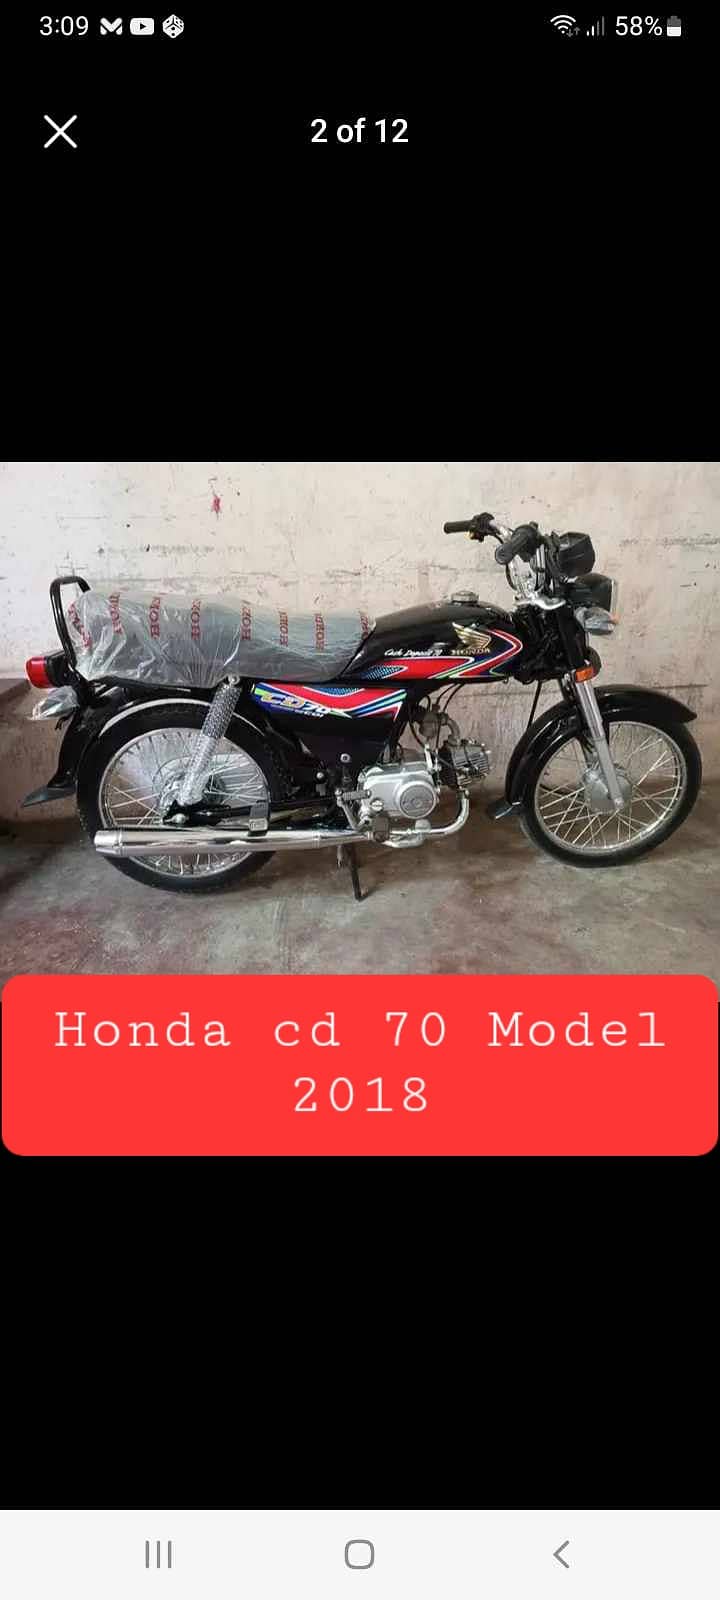 Honda cd 70 9